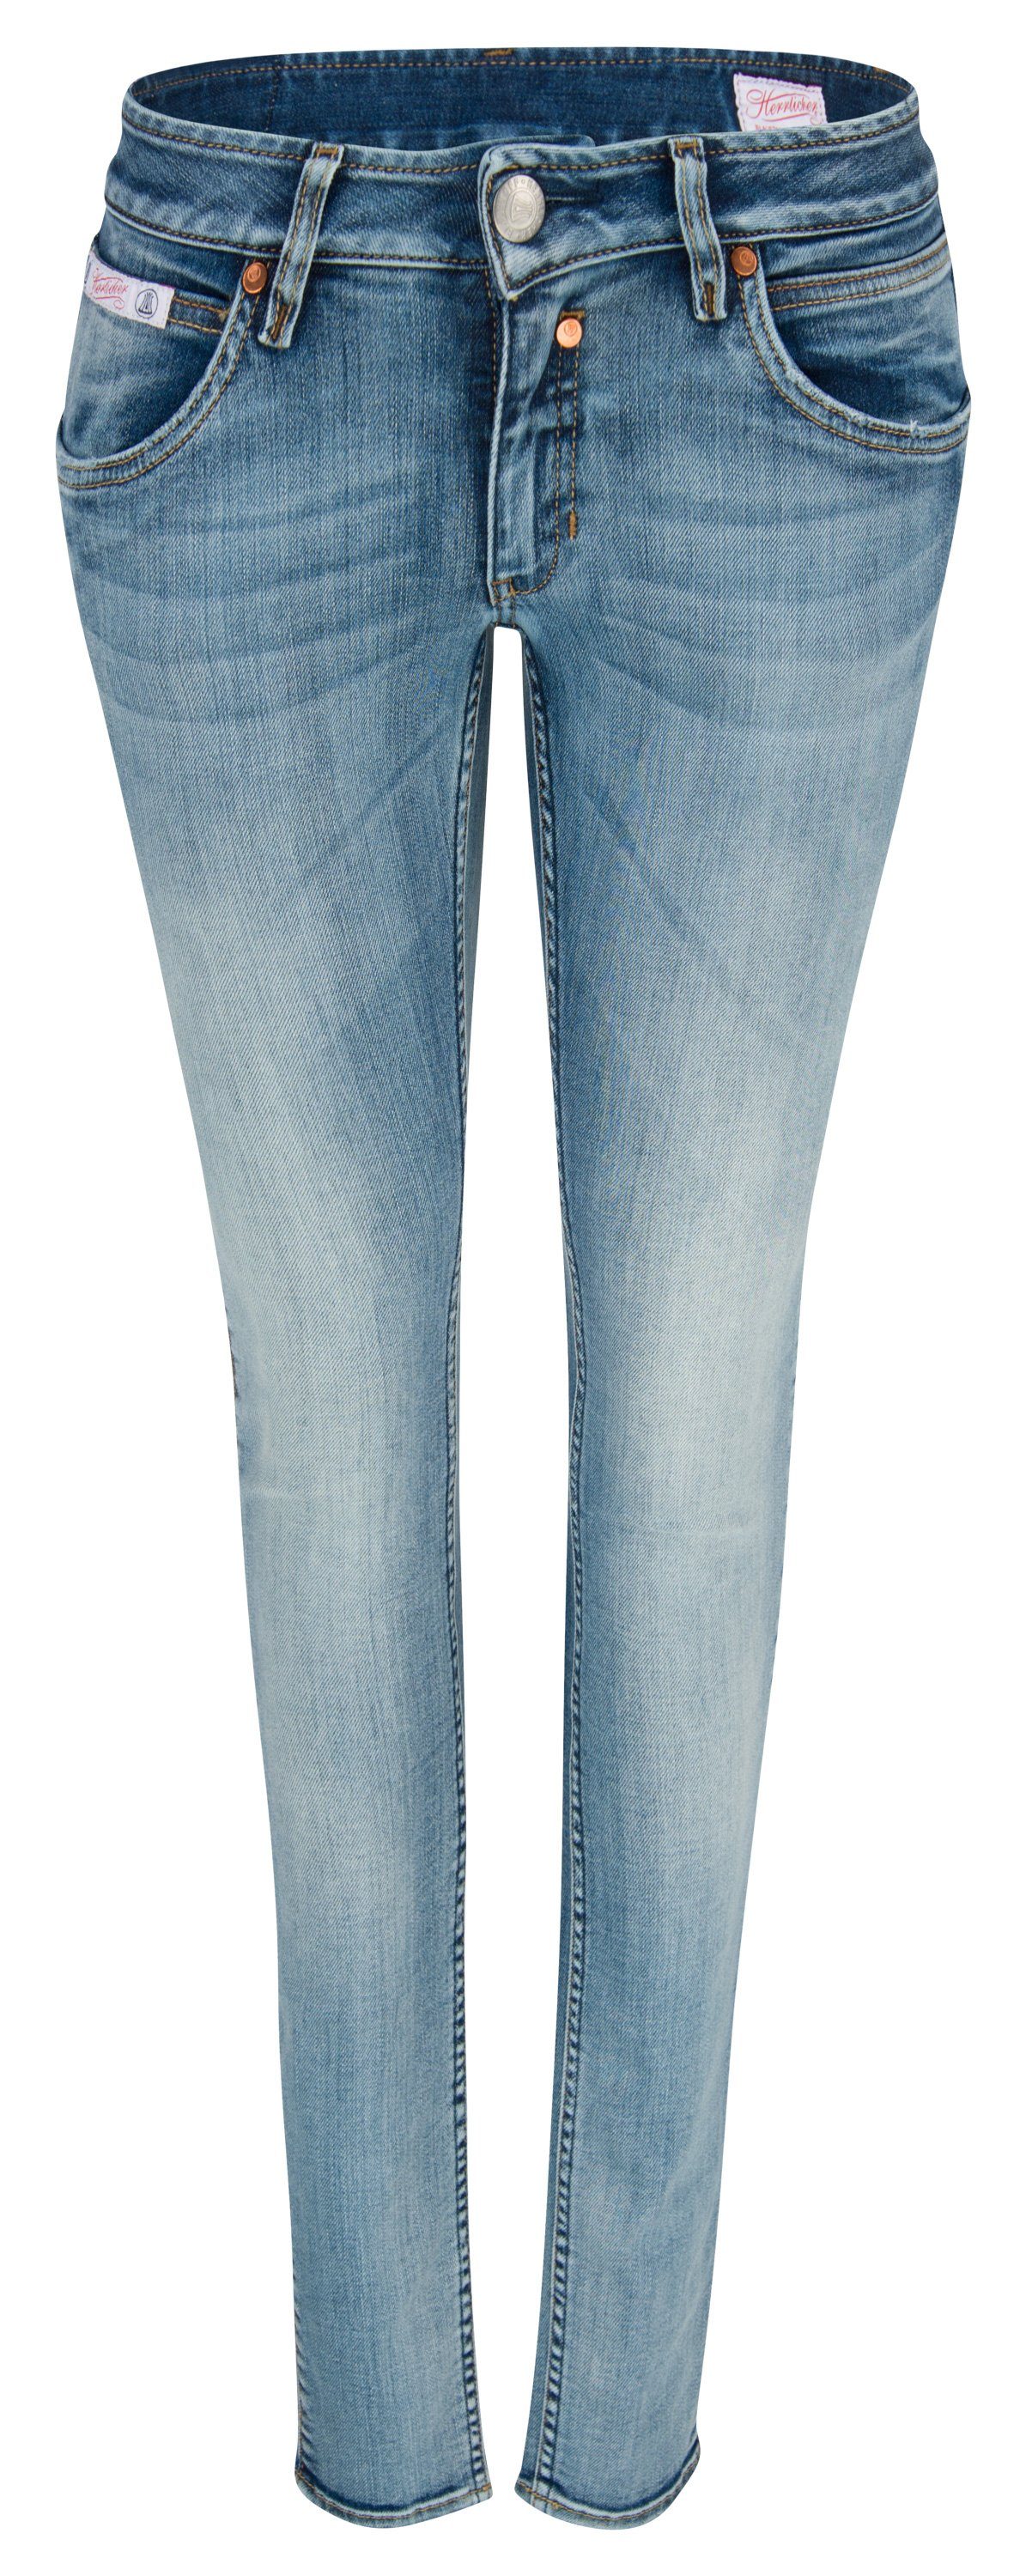 Herrlicher Stretch-Jeans TOUCH Denim Slim frost Powerstretch HERRLICHER 5705-D9666-832